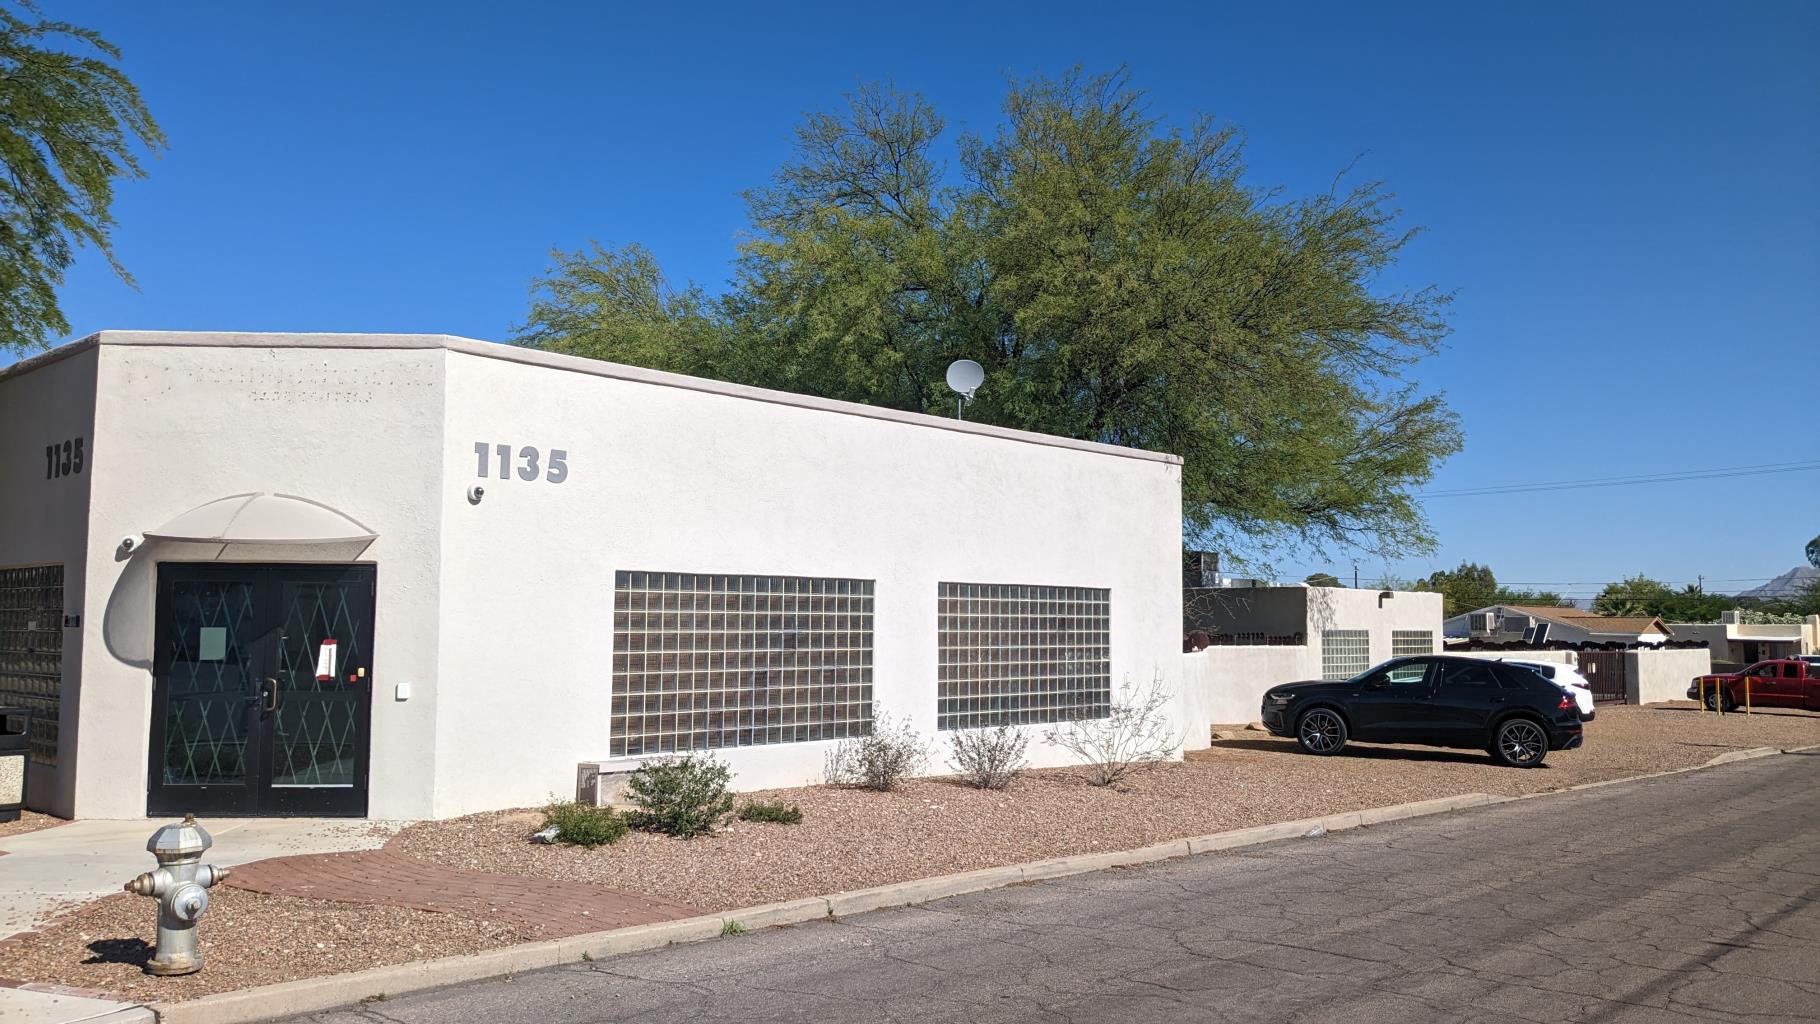 1135 N Jones Blvd., Tucson, AZ 85716  Tucson, A